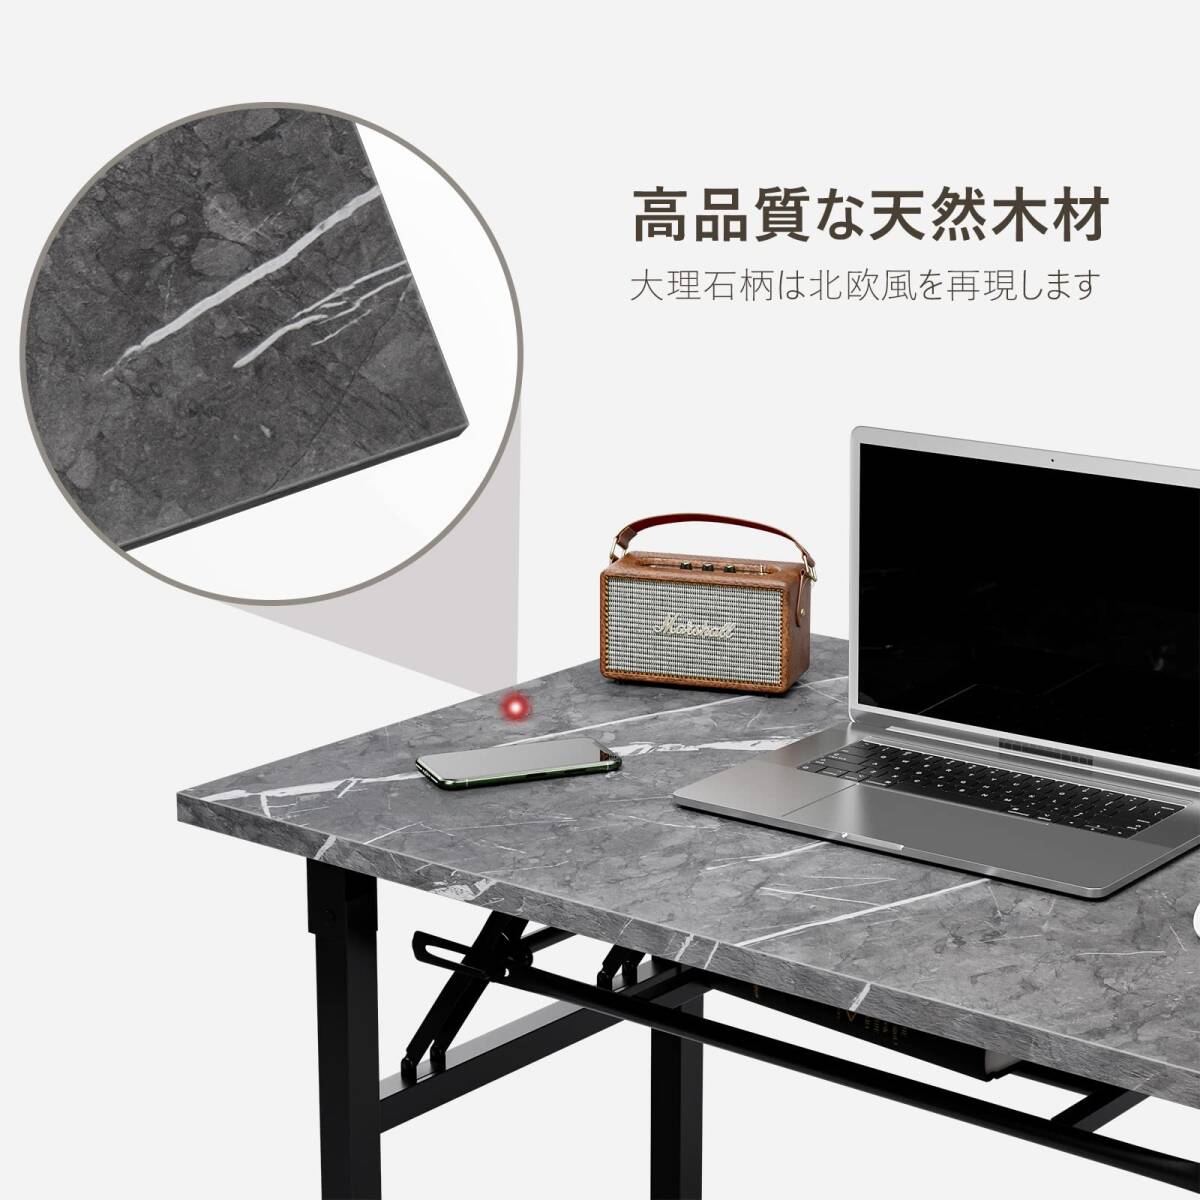  рекомендация * мрамор style ощущение роскоши компьютерный стол долговечность выдающийся compact дизайн 